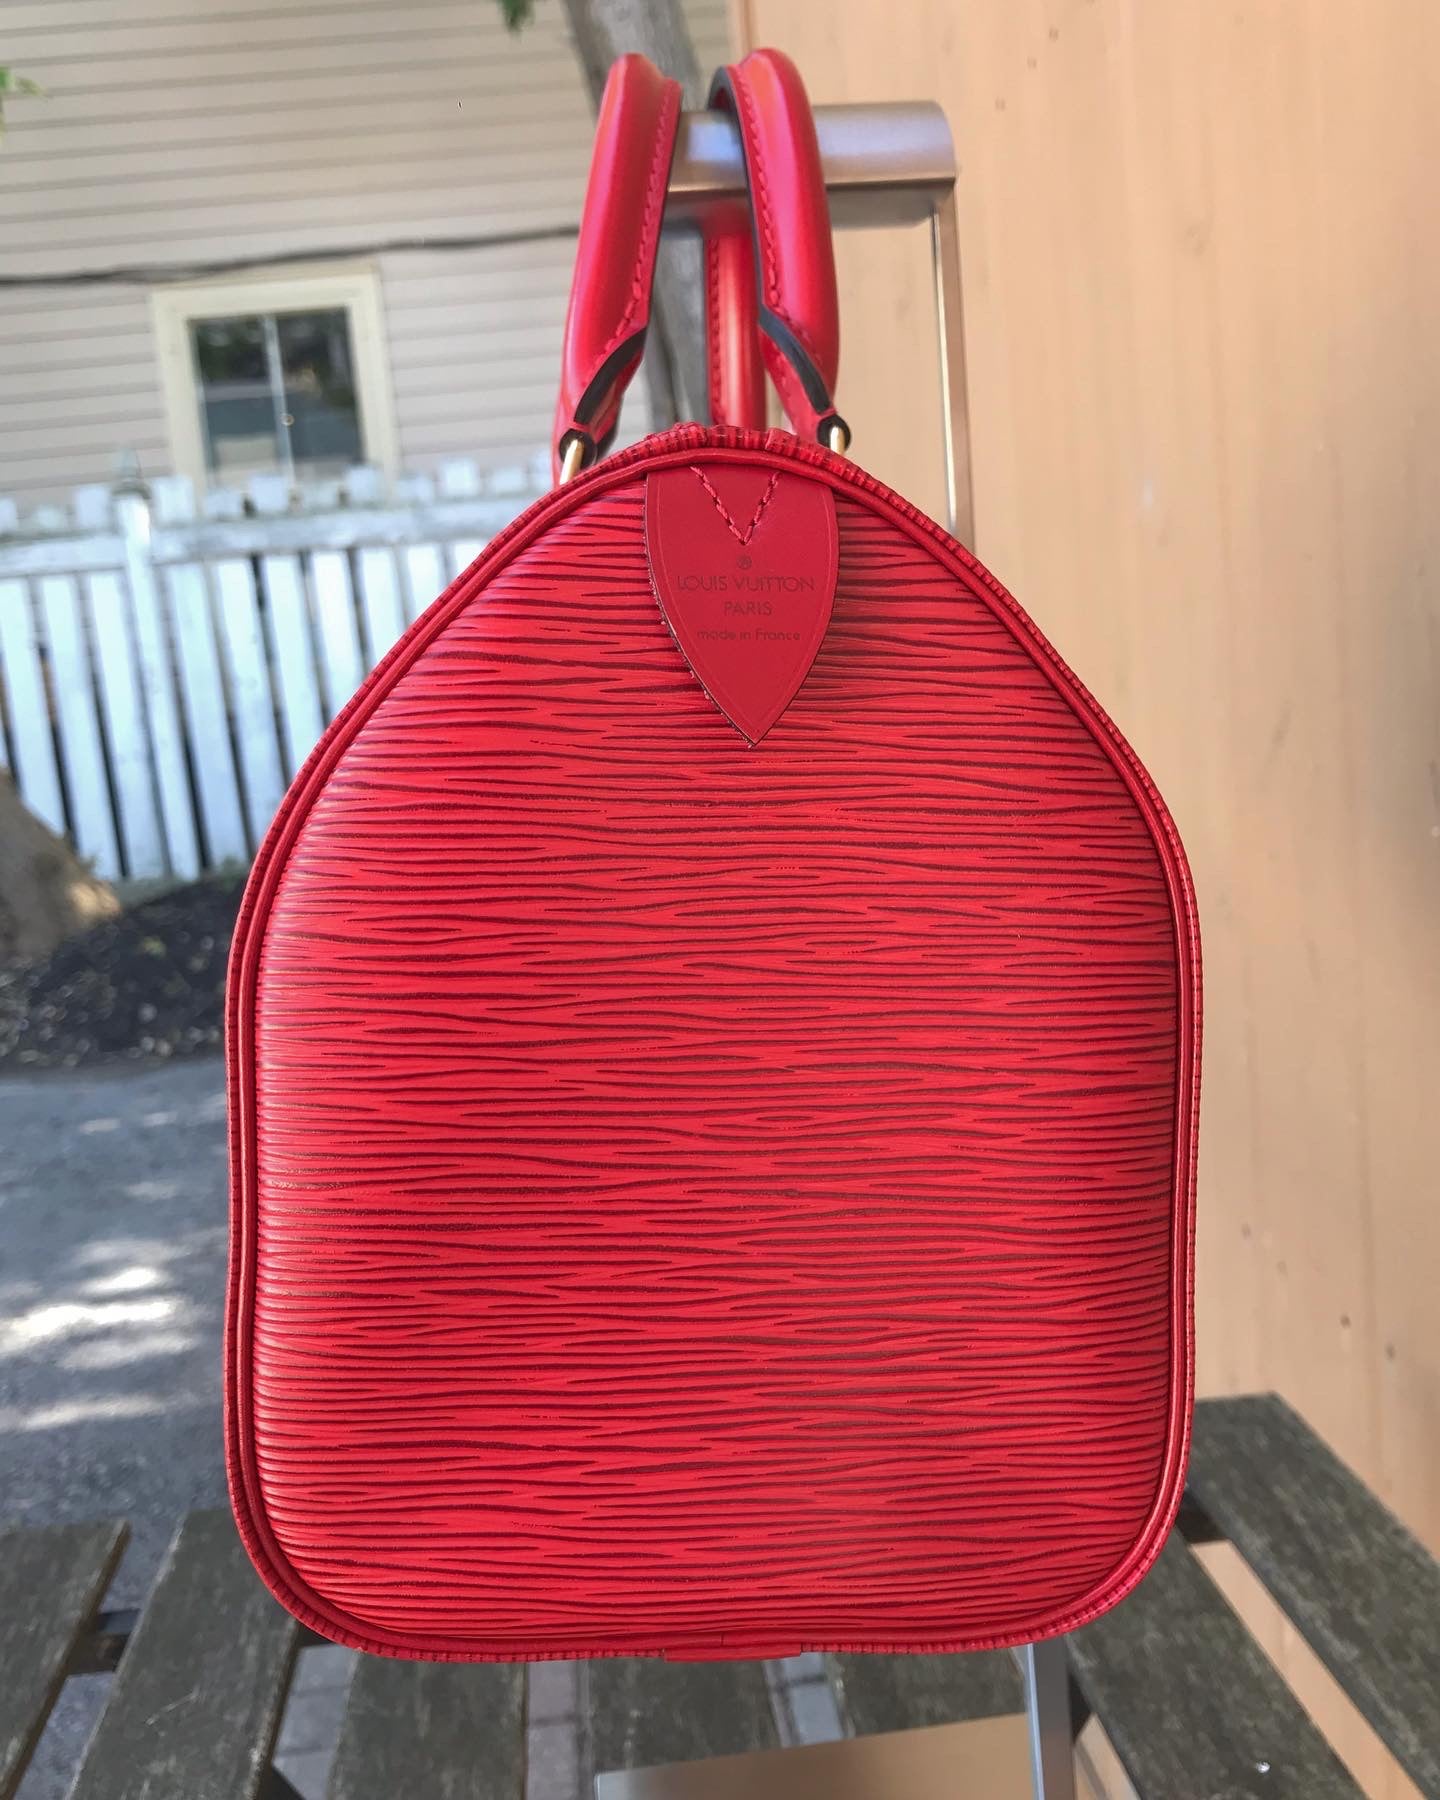 Louis Vuitton - Speedy 25 Epi Leather Red